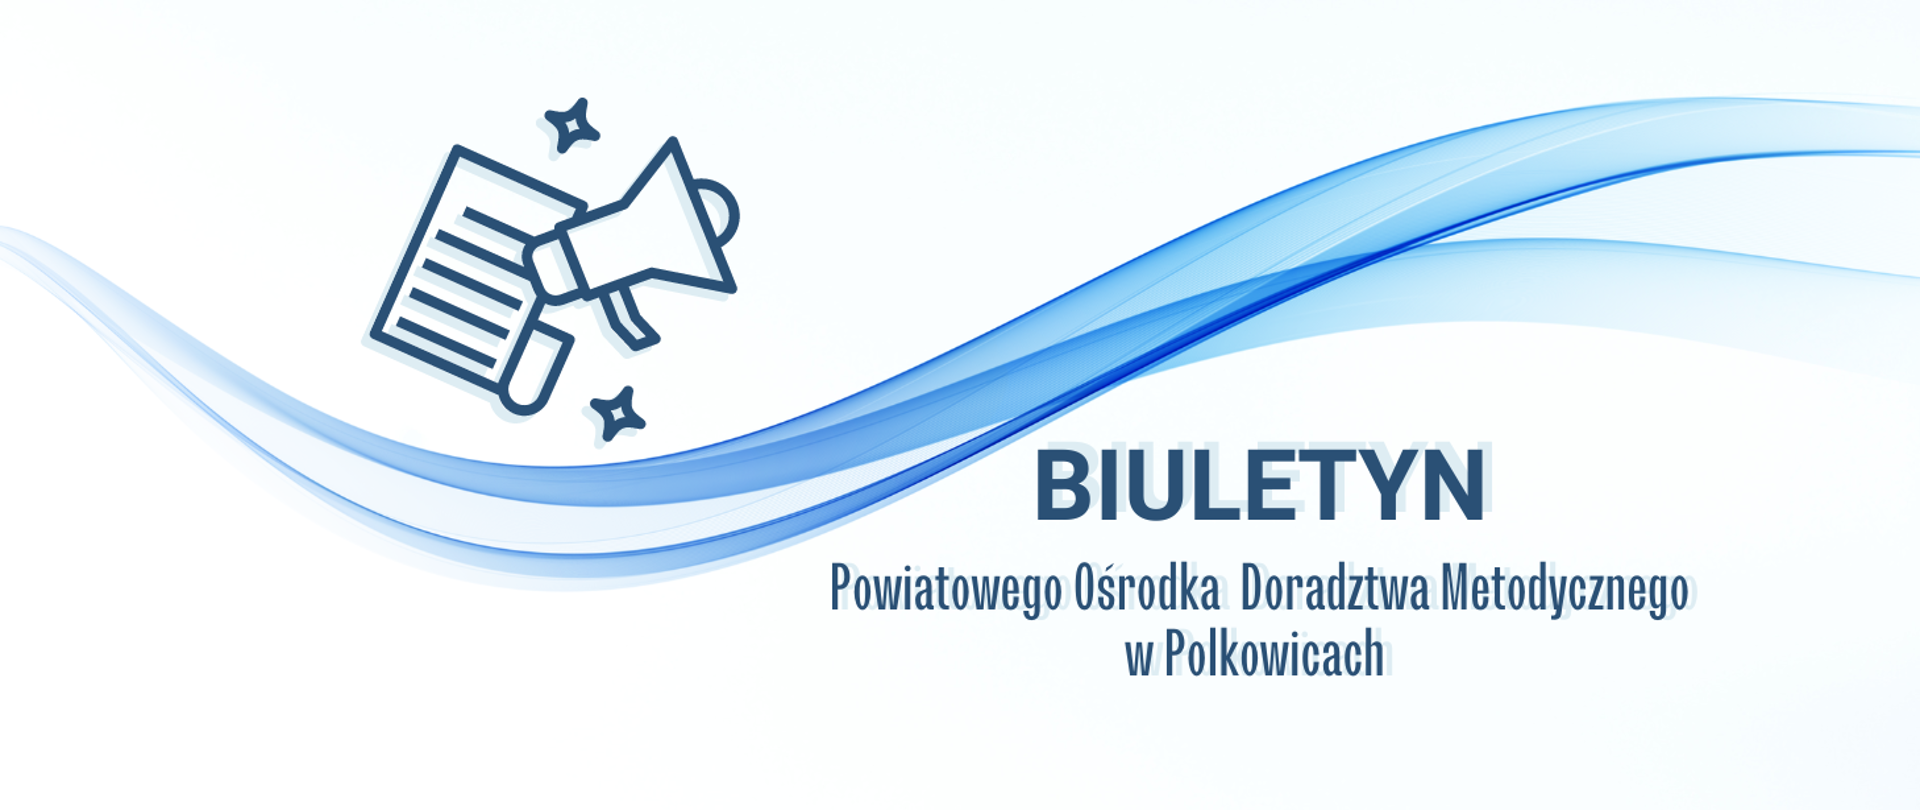 Baner napis Biuletyn Powiatowego Ośrodka Doradztwa Metodycznego w Polkowicach, po lewej stronie na górze ikonka głośnik i informacja 